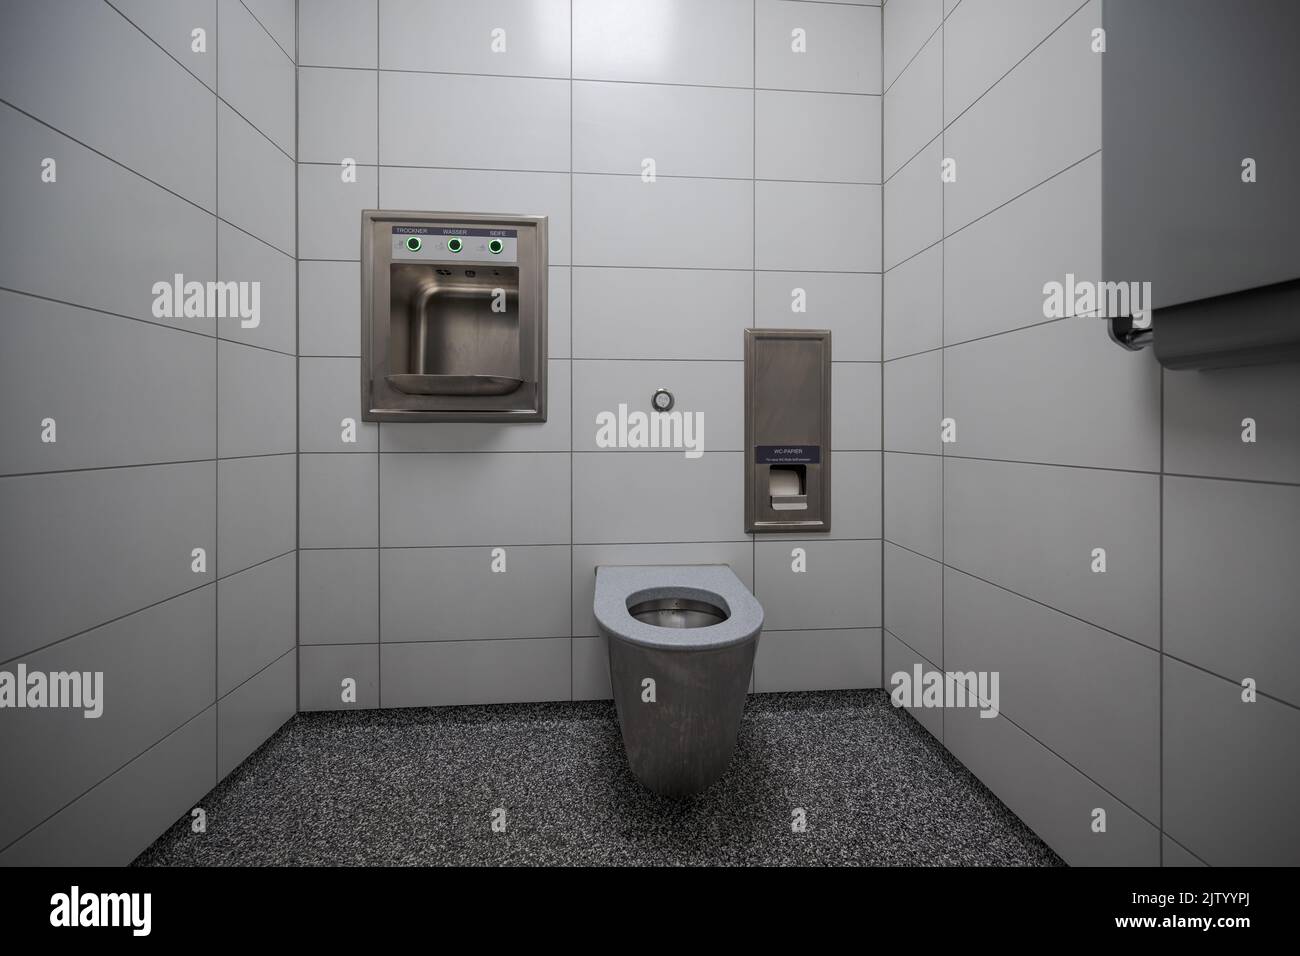 Interior de un nuevo y moderno baño público limpio con azulejos blancos y cuenco de acero inoxidable Foto de stock